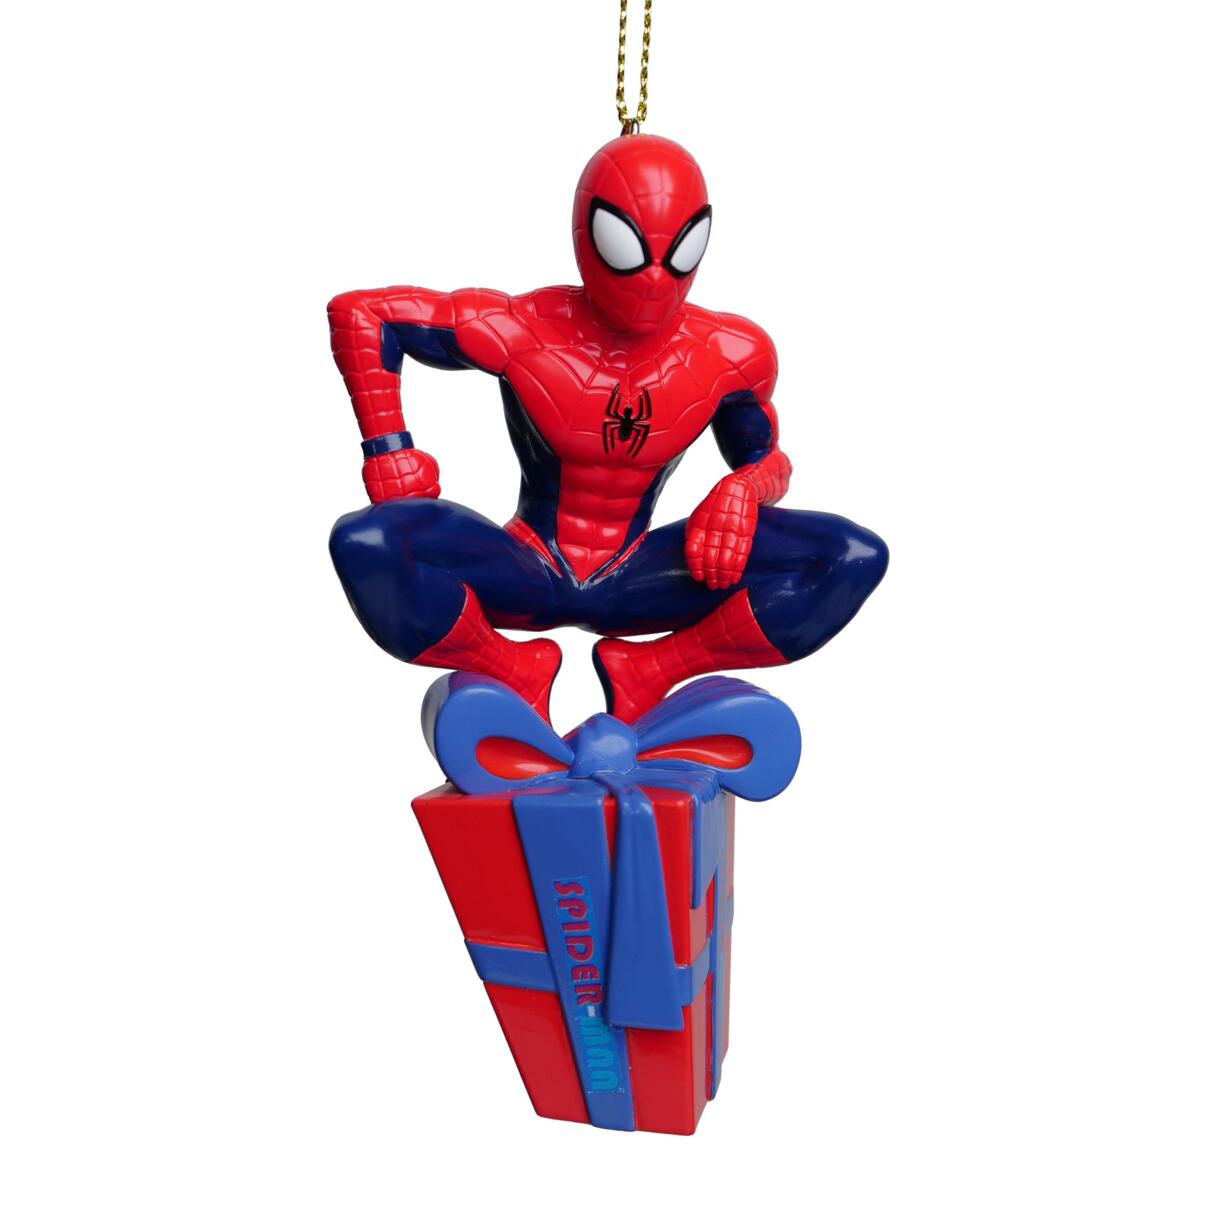 Adorno de fiesta para colgar Disney Spiderman Rojo 1